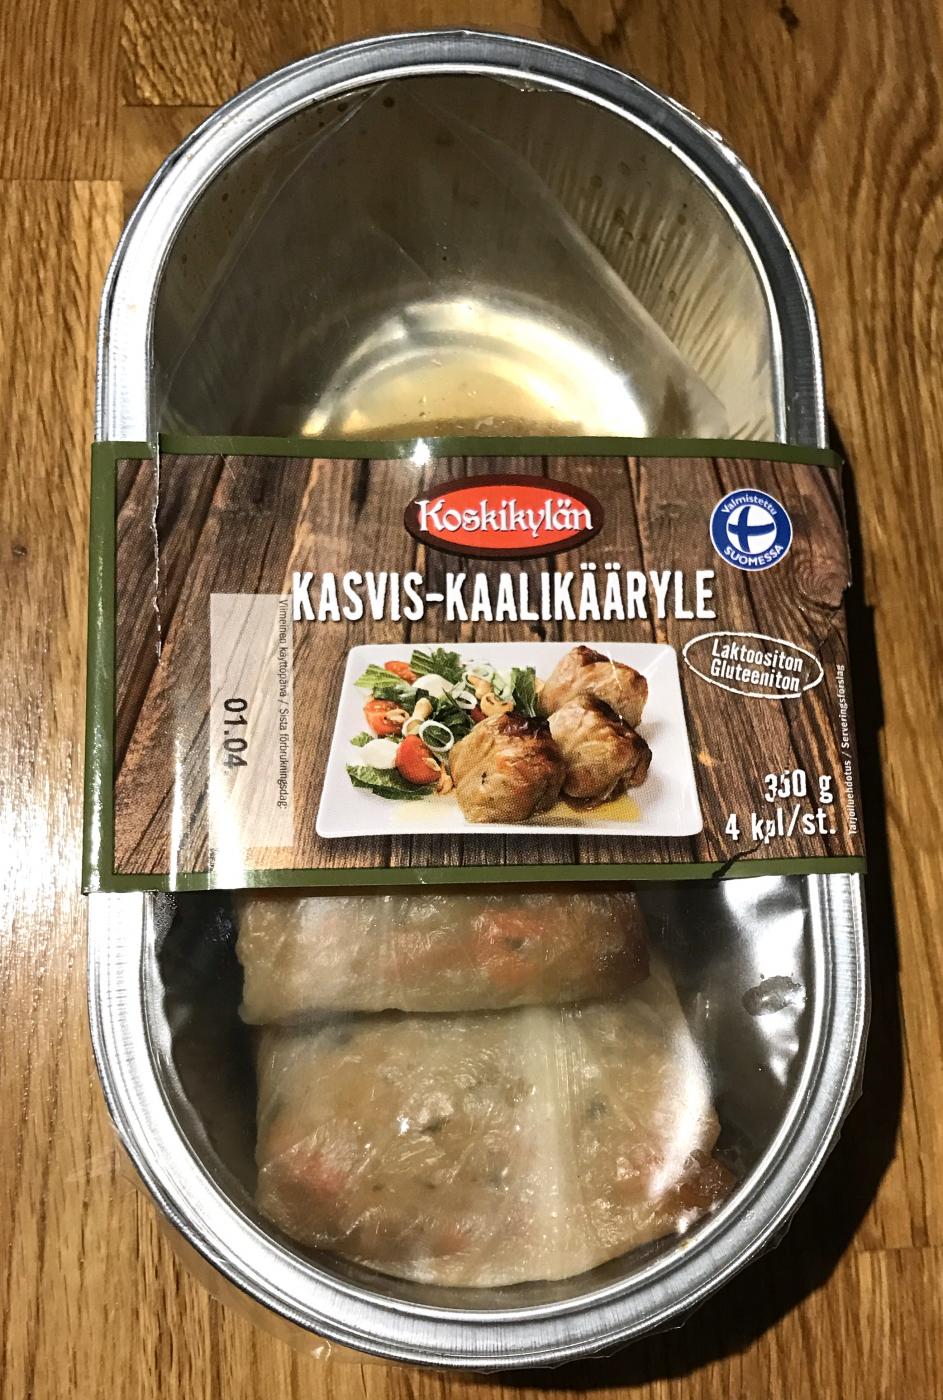 Lidl Koskikylän kasvis-kaalikääryle 4 kpl / 350 g